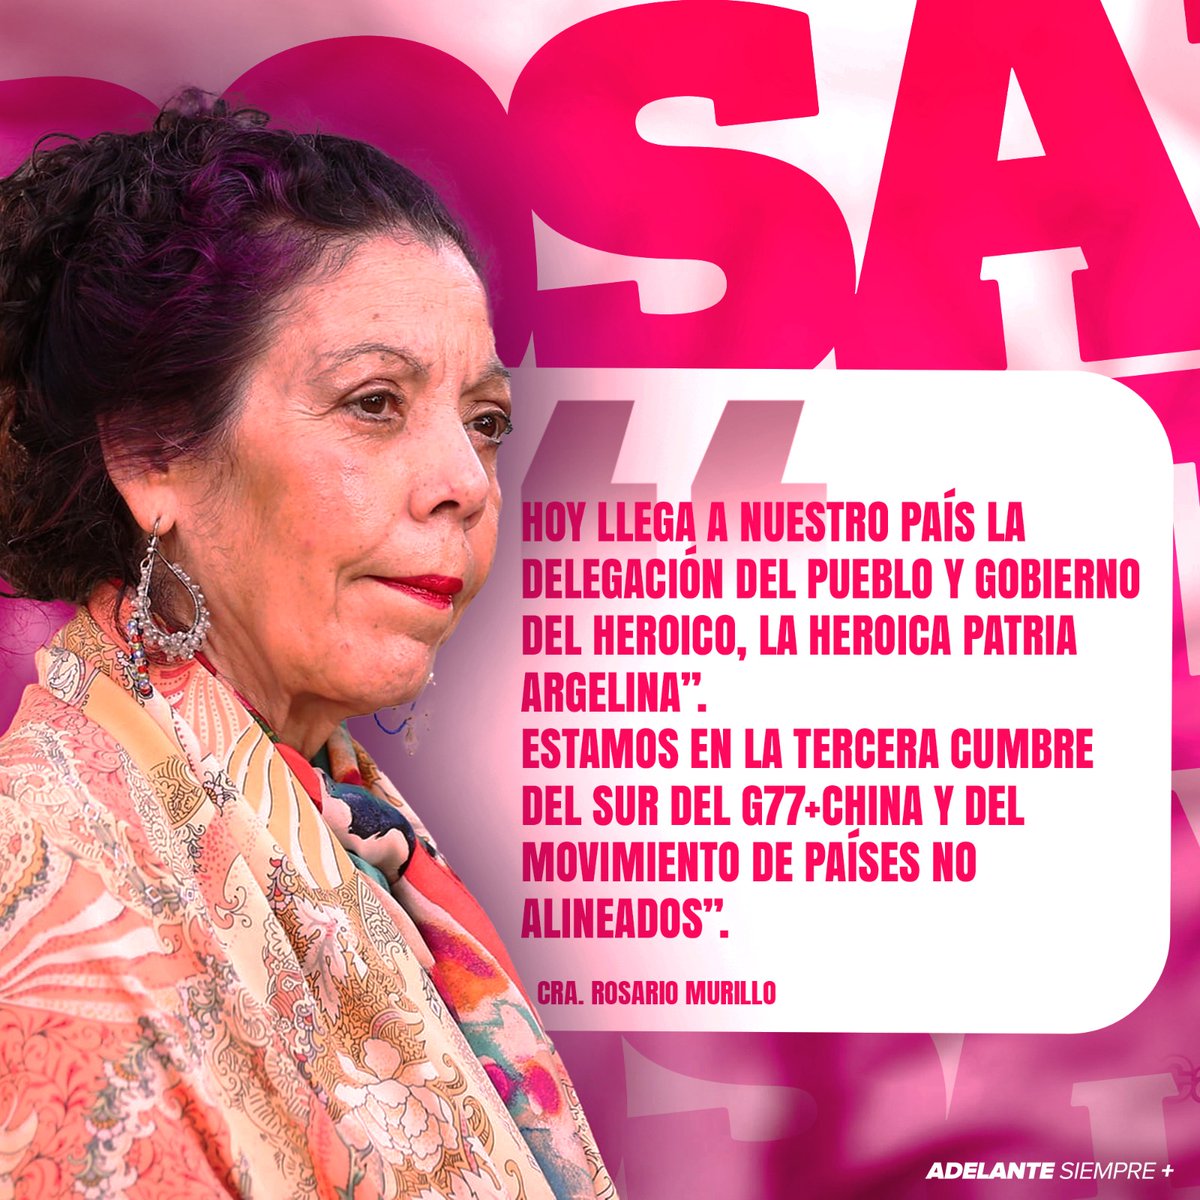 Palabras de la Compañera Vicepresidenta Rosario Murillo hoy miércoles 17/01/2024

#2024HaciaNuevasVictorias 
#MásVictoriasMásBienestar